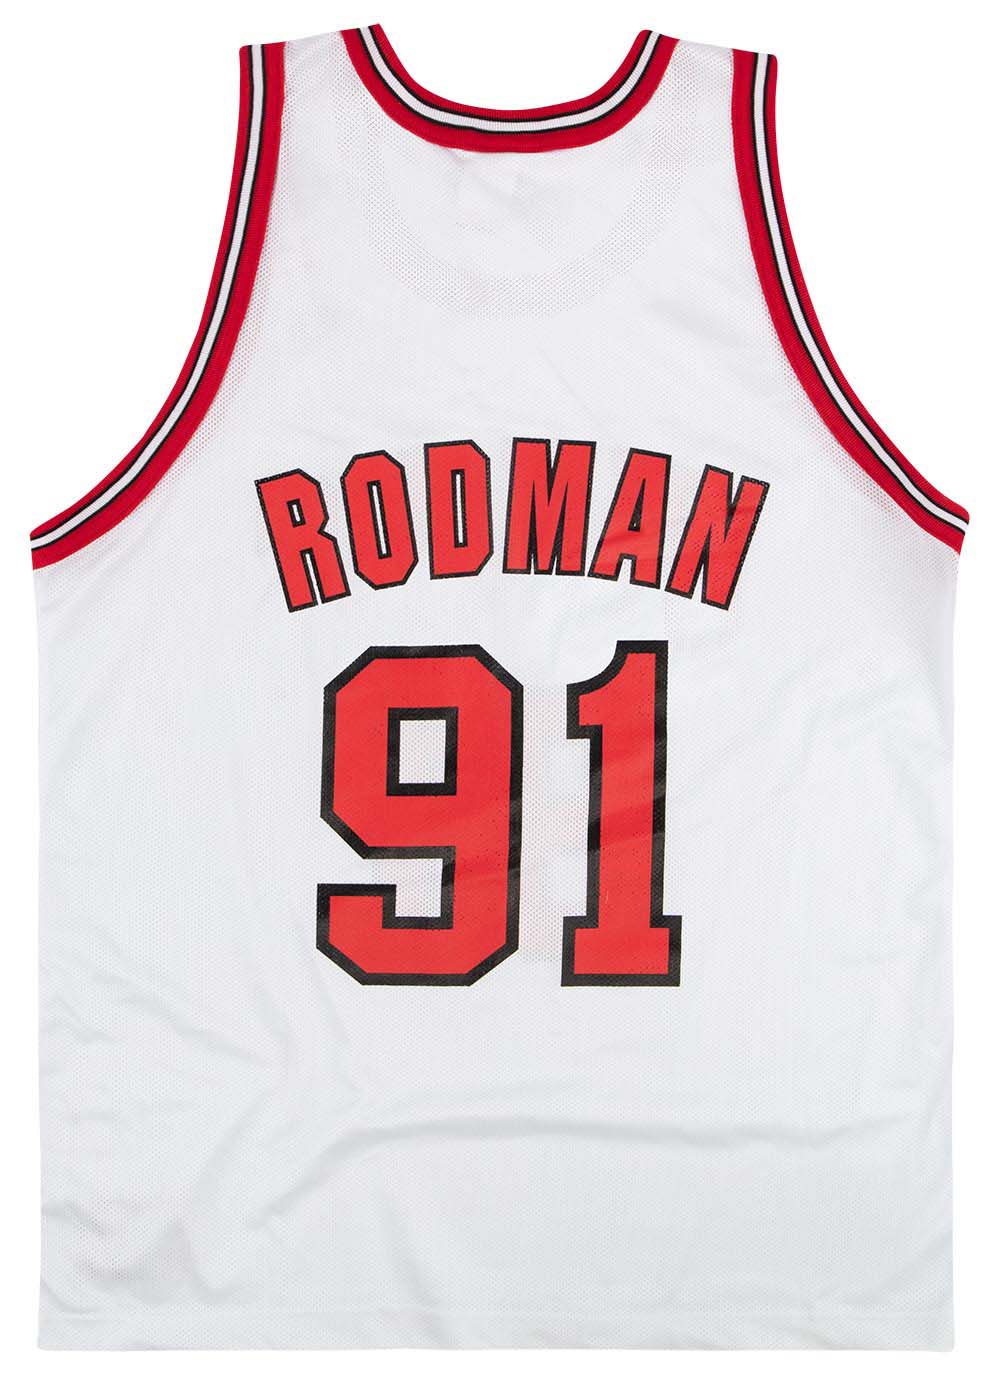 Official Dennis Rodman NBA Jerseys, NBA City Jersey, Dennis Rodman